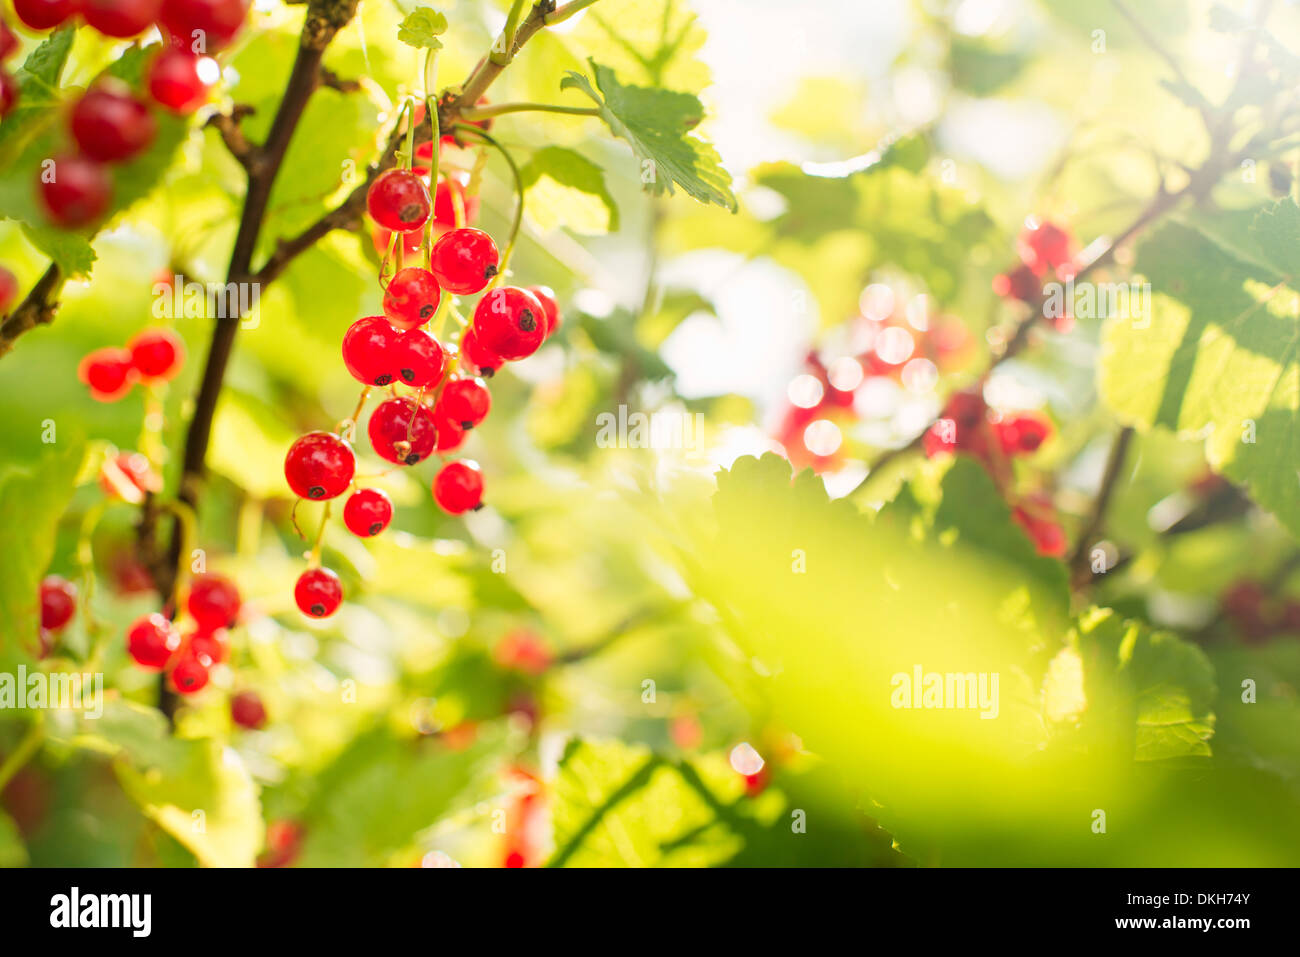 Groseilles rouges (Ribes rubrum) croissant dans un jardin Banque D'Images